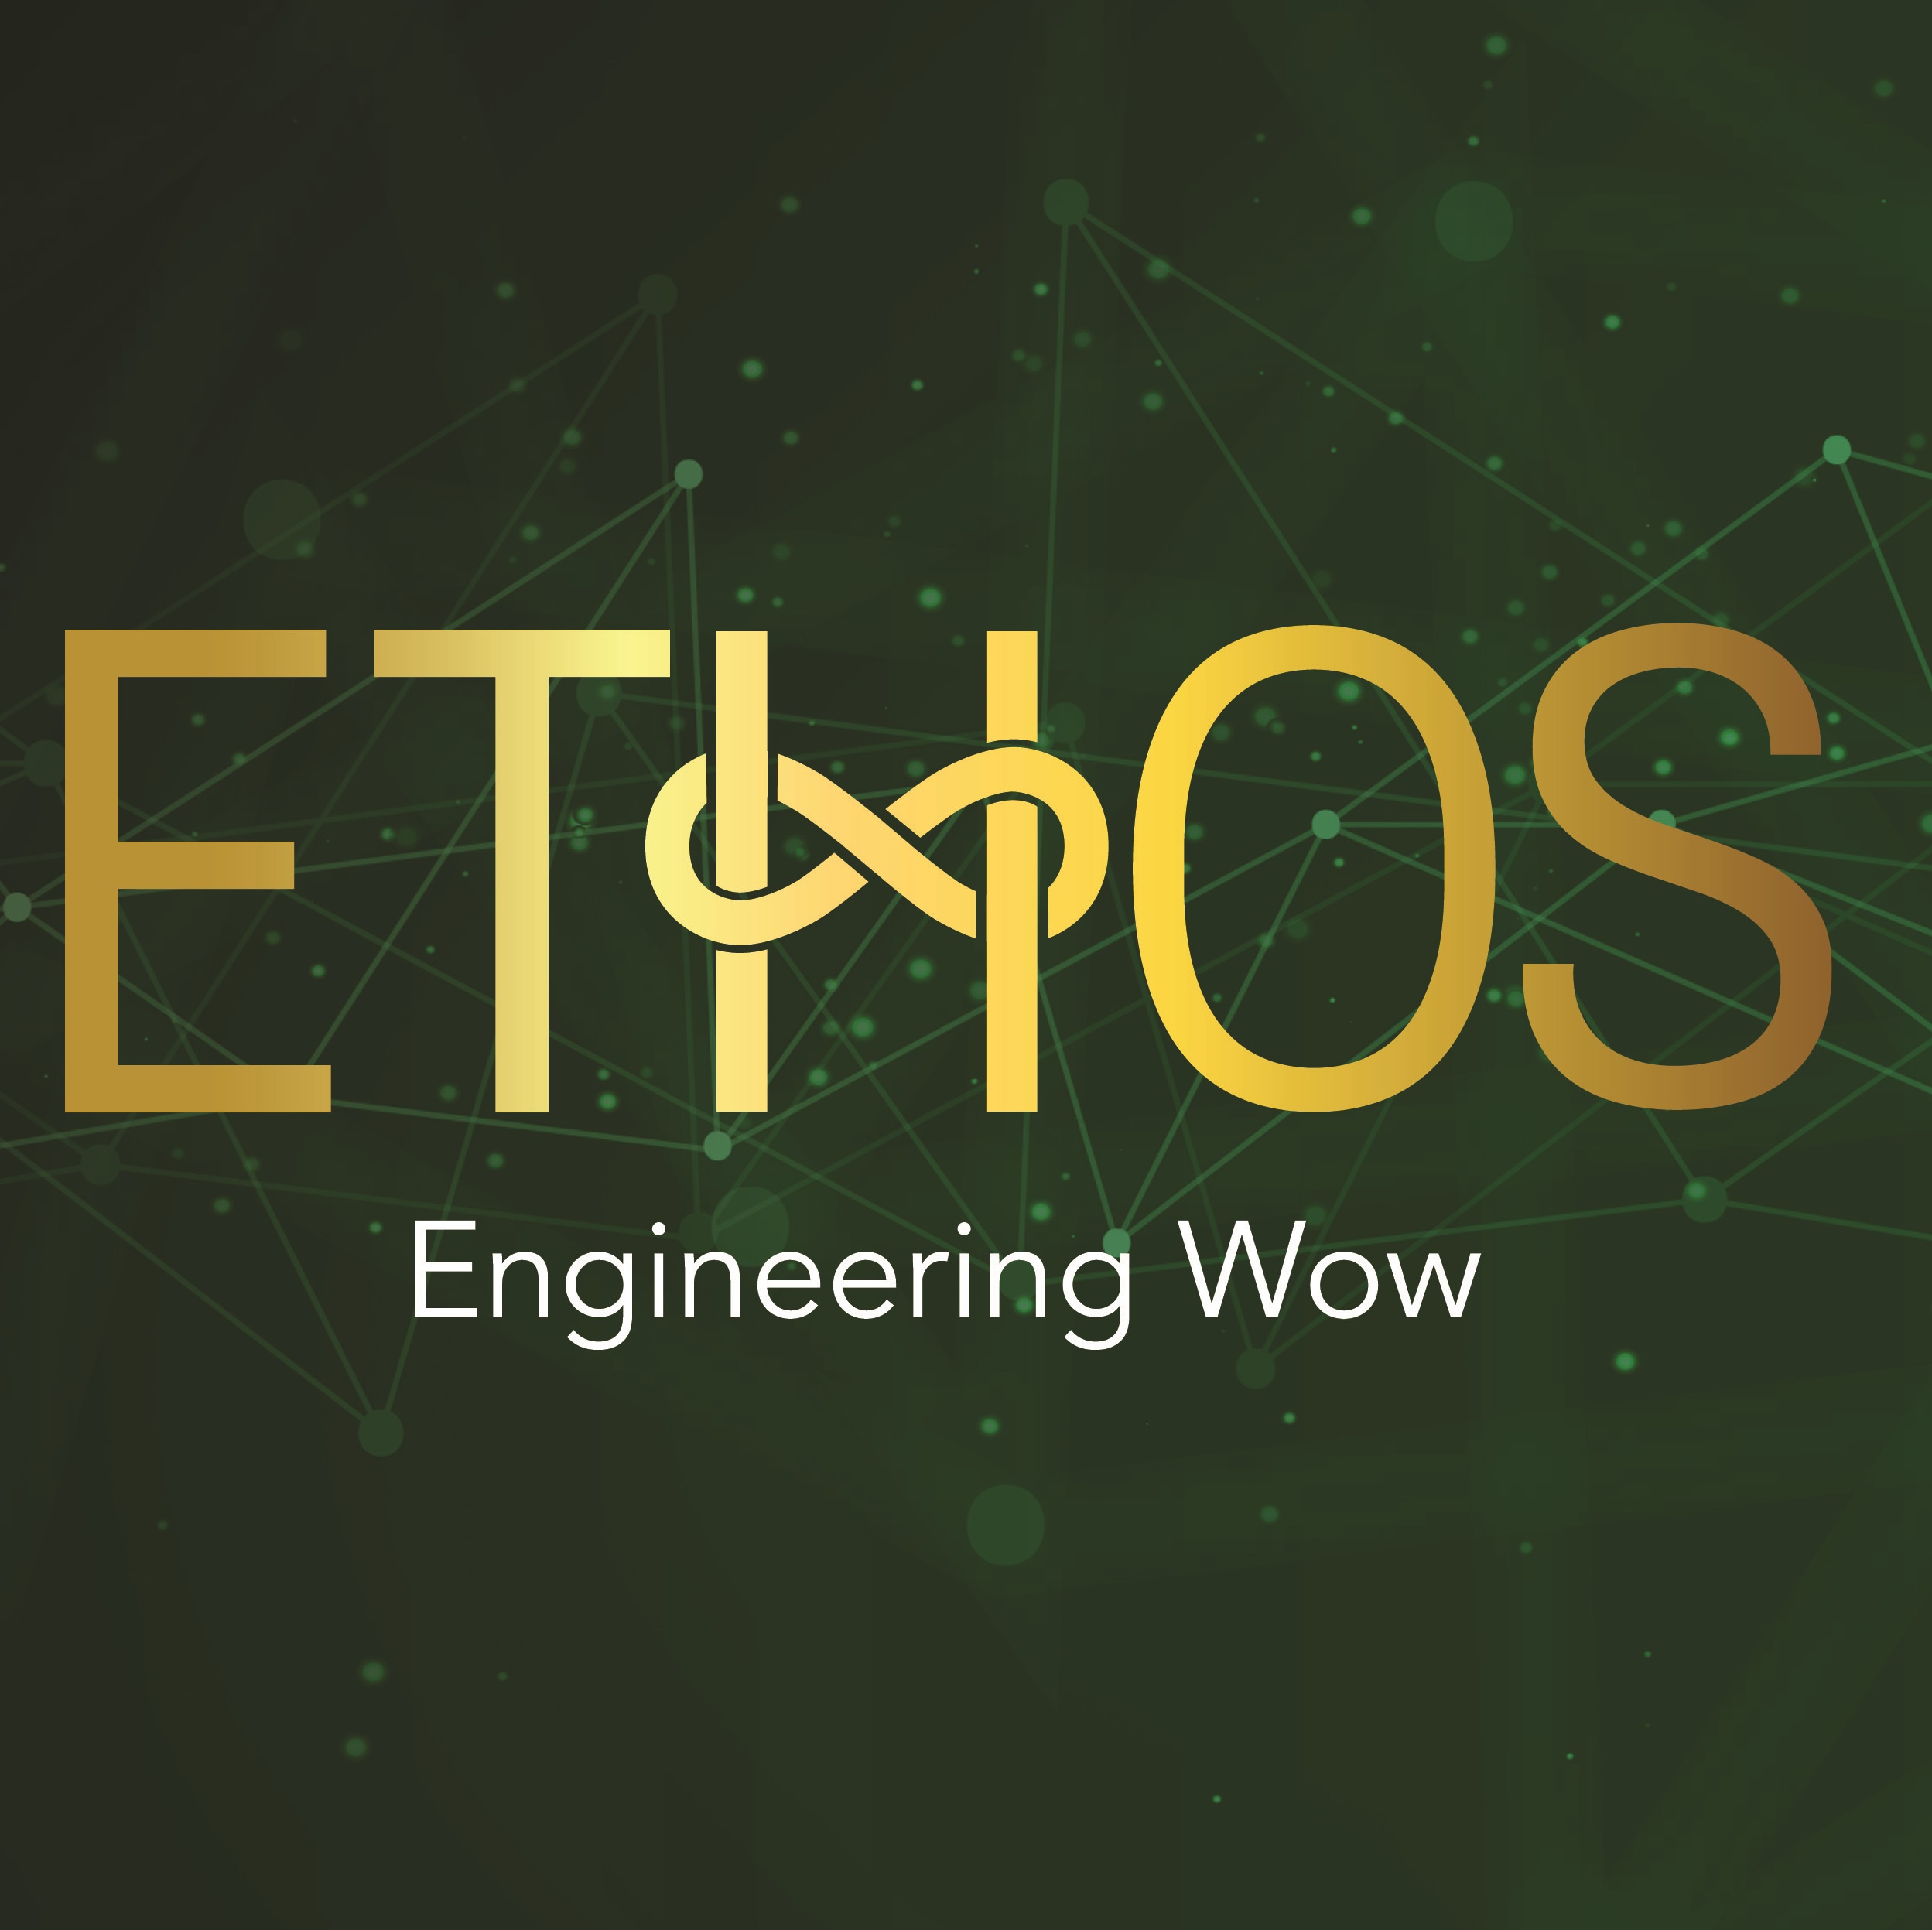 Ethos Engineering will be hiring